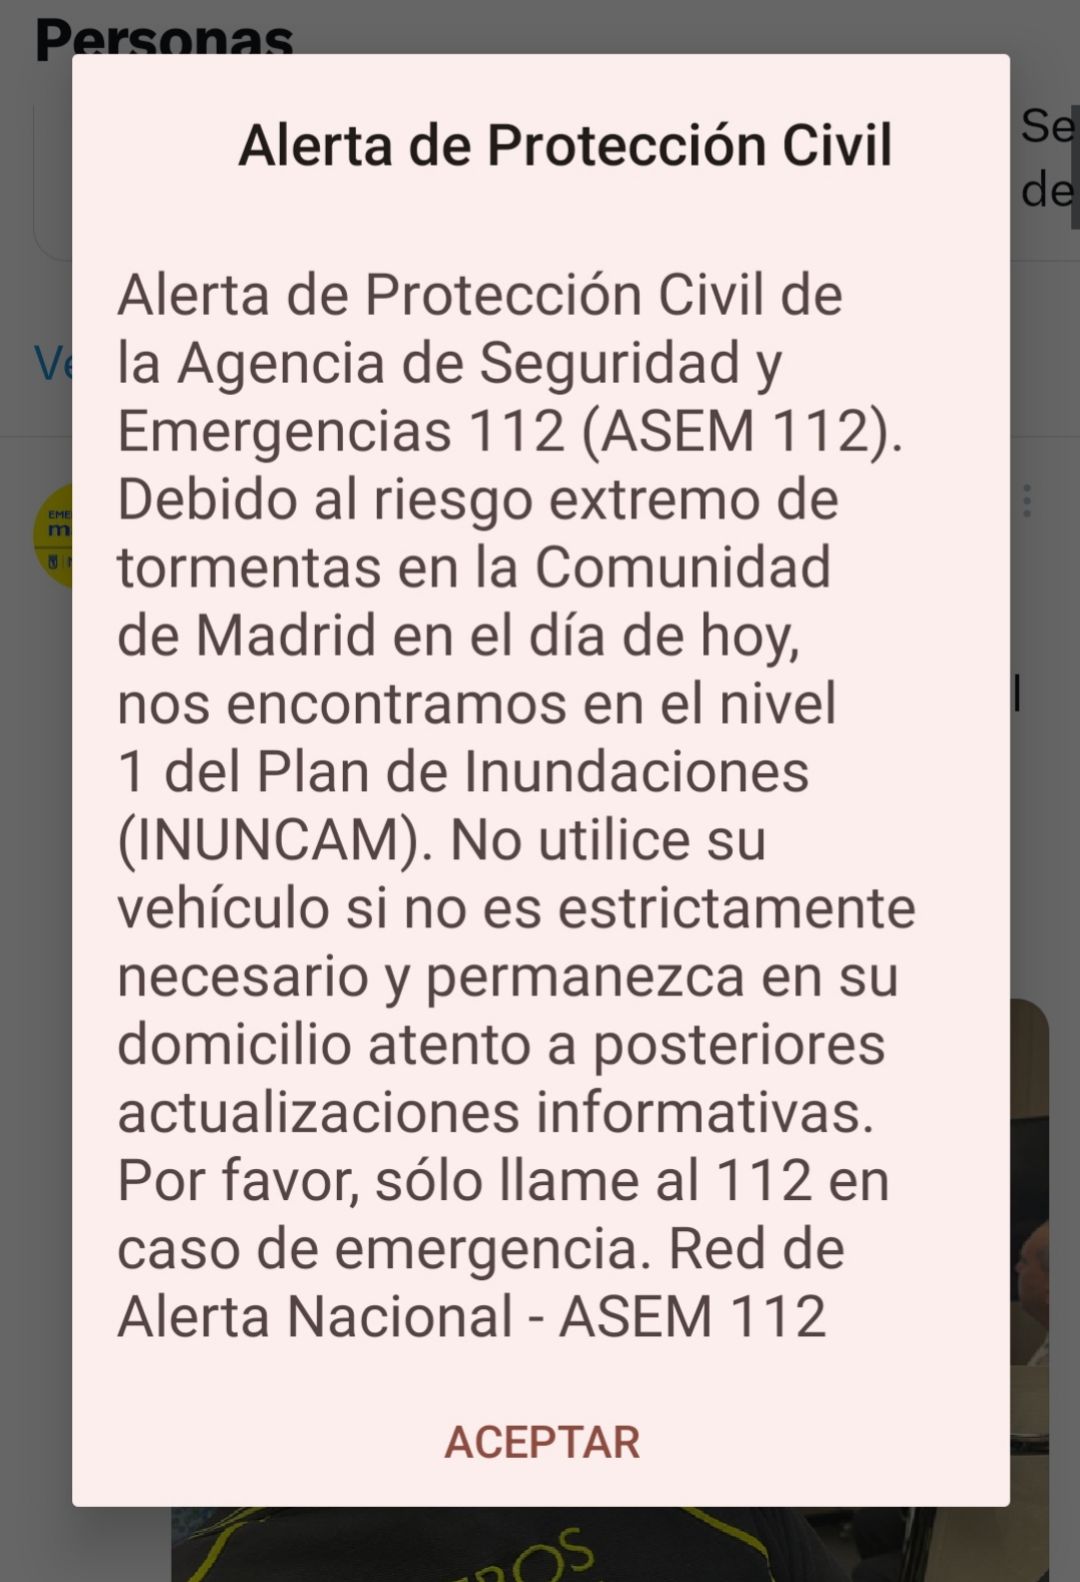 El mensaje de Protección Civil que ha llegado a los móviles de los madrileños.